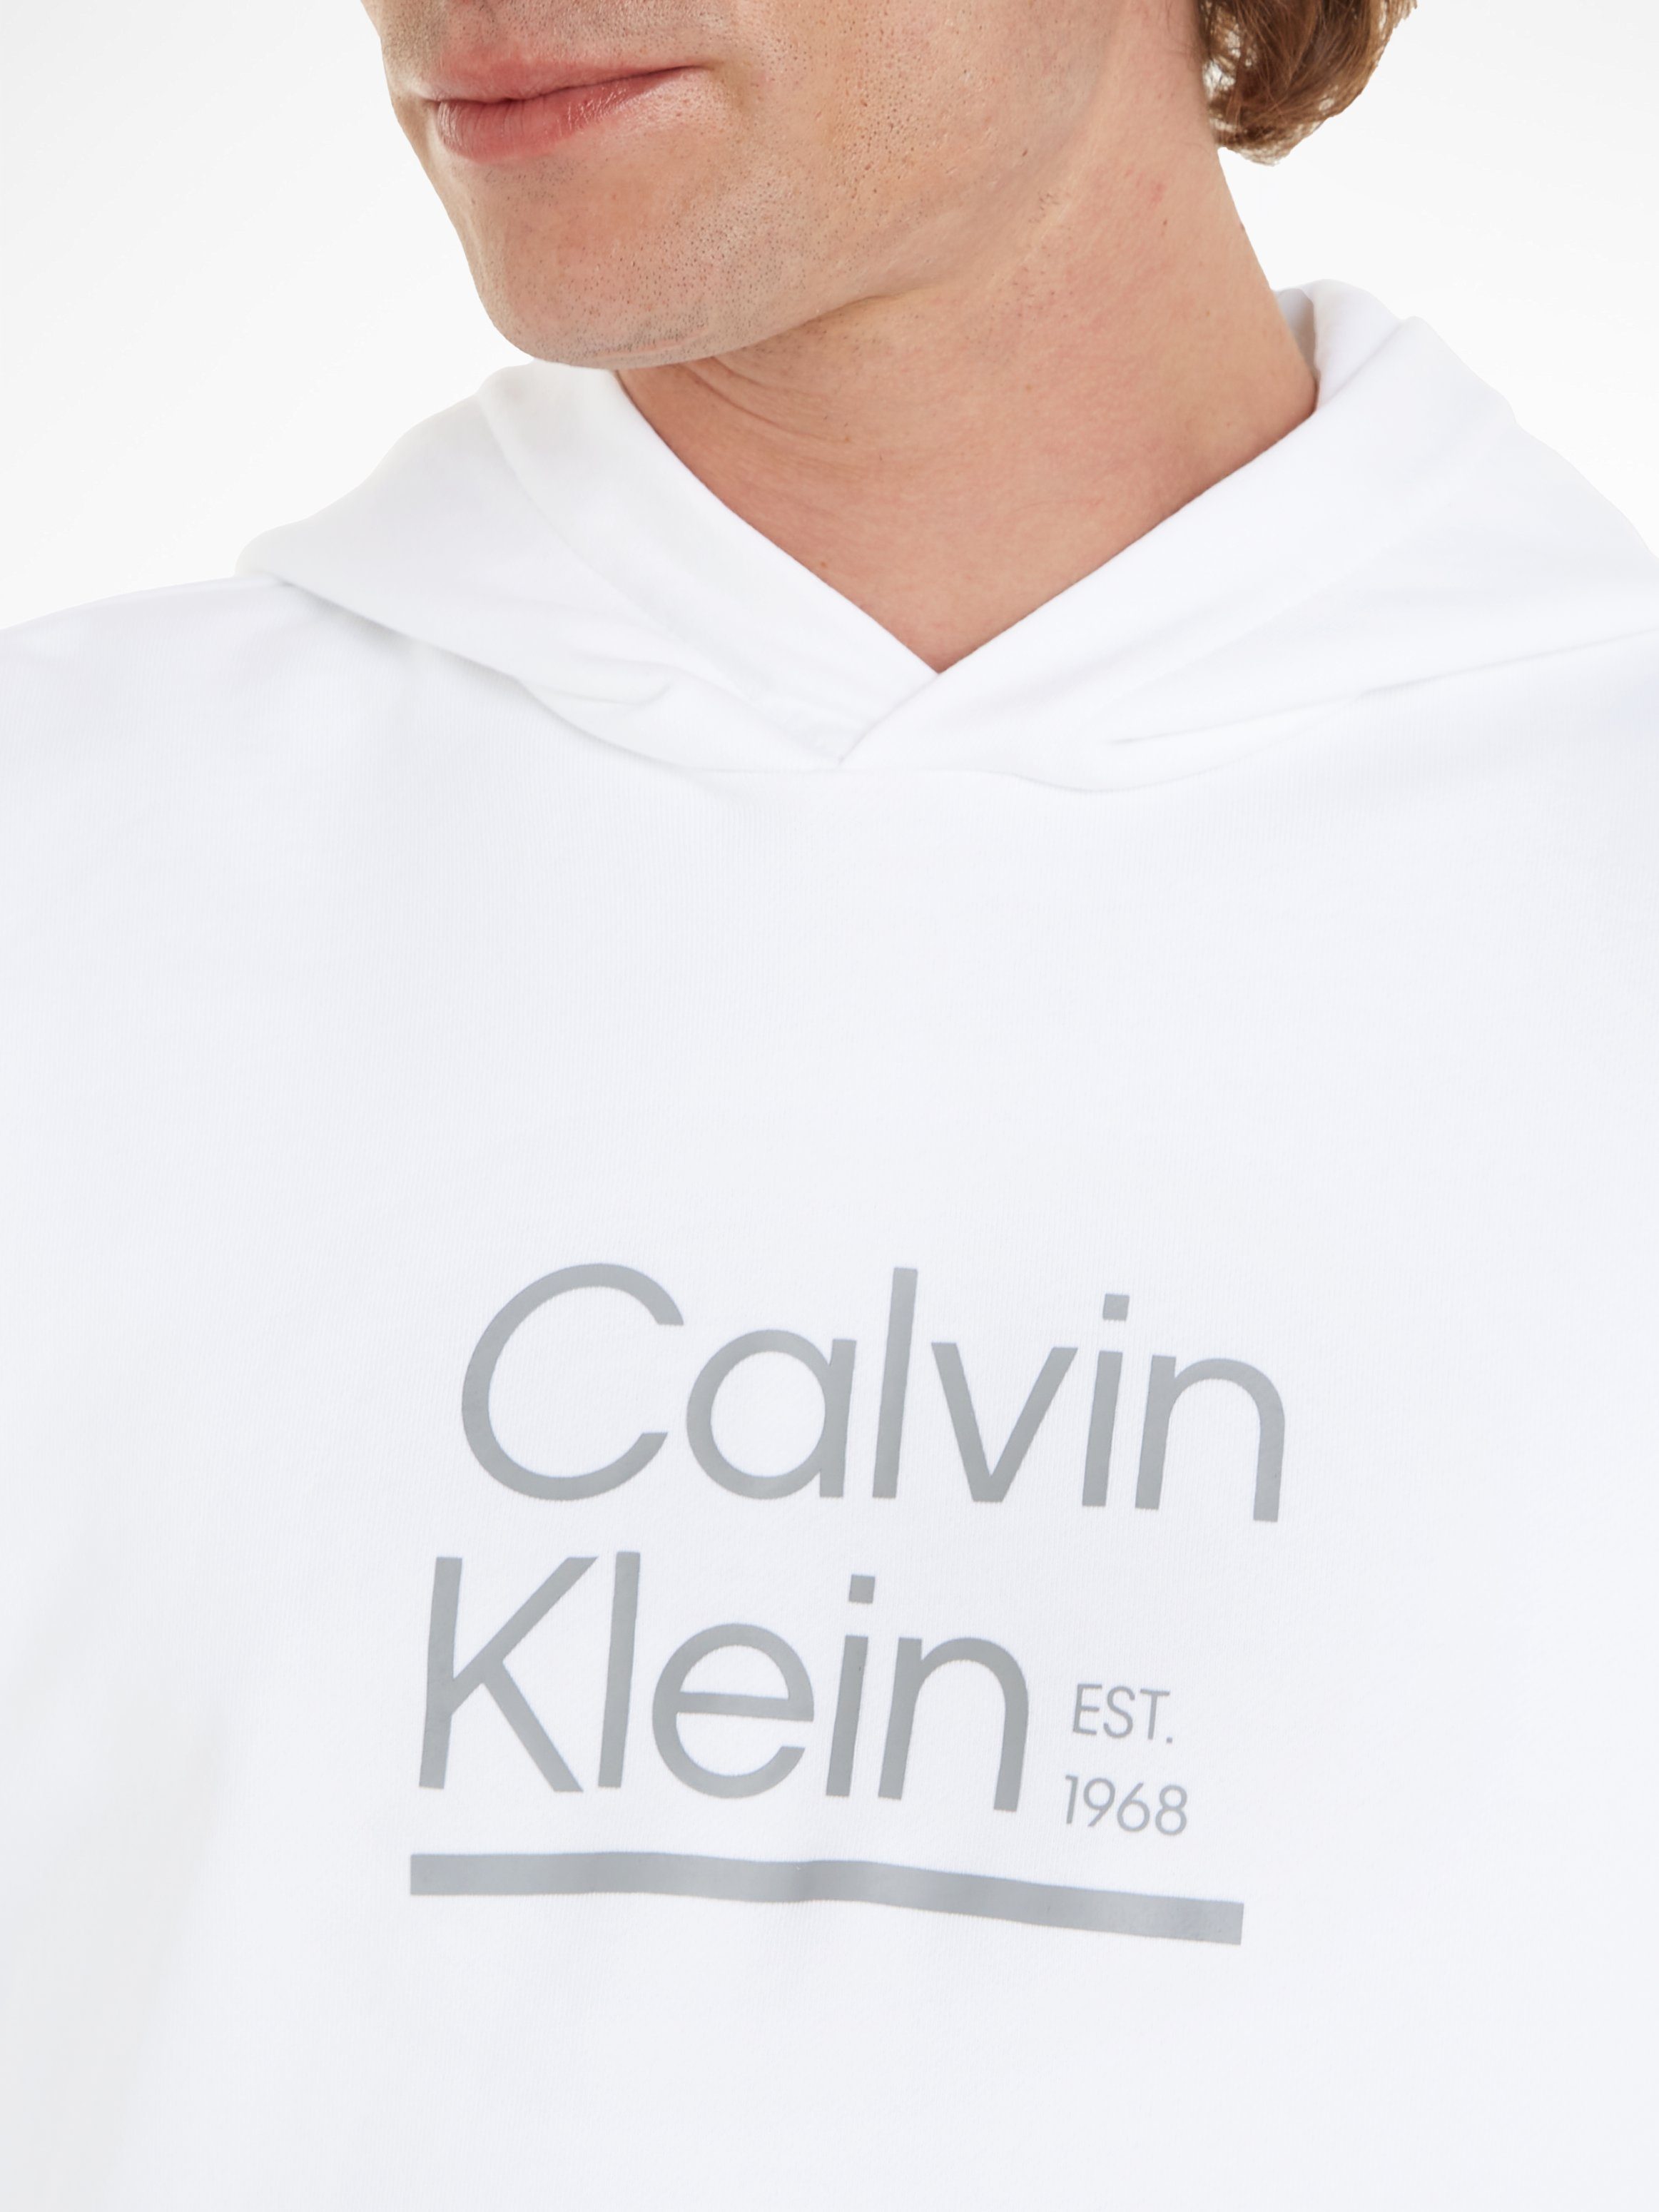 mit HOODIE Kapuzensweatshirt CONTRAST LINE Calvin Logodruck White Klein LOGO Bright